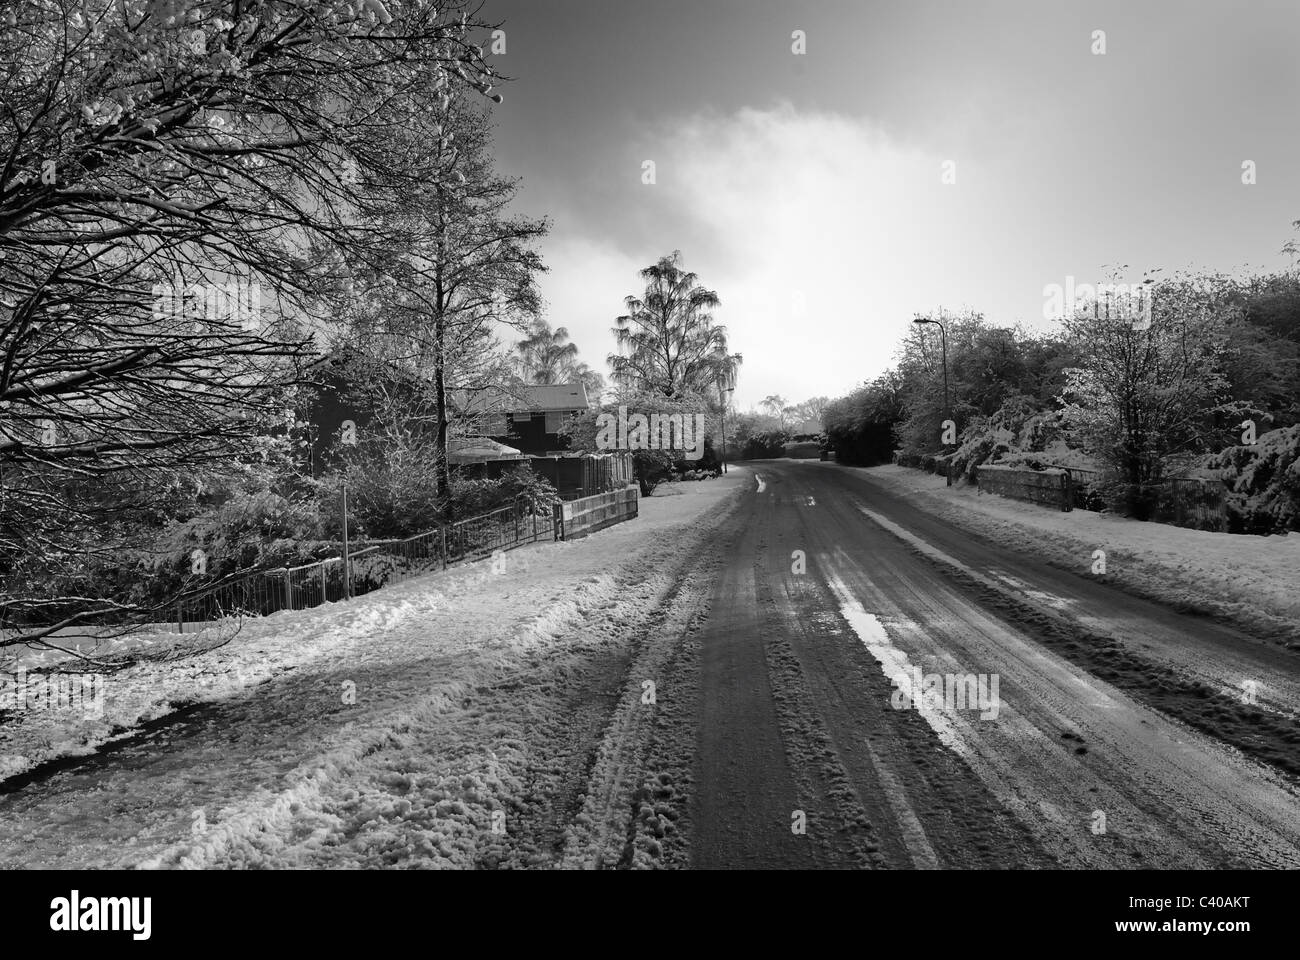 Routes verglacées. Photographie noir/blanc de Guttridge Lane, Tadley, Hampshire, England, UK, Royaume-Uni Banque D'Images